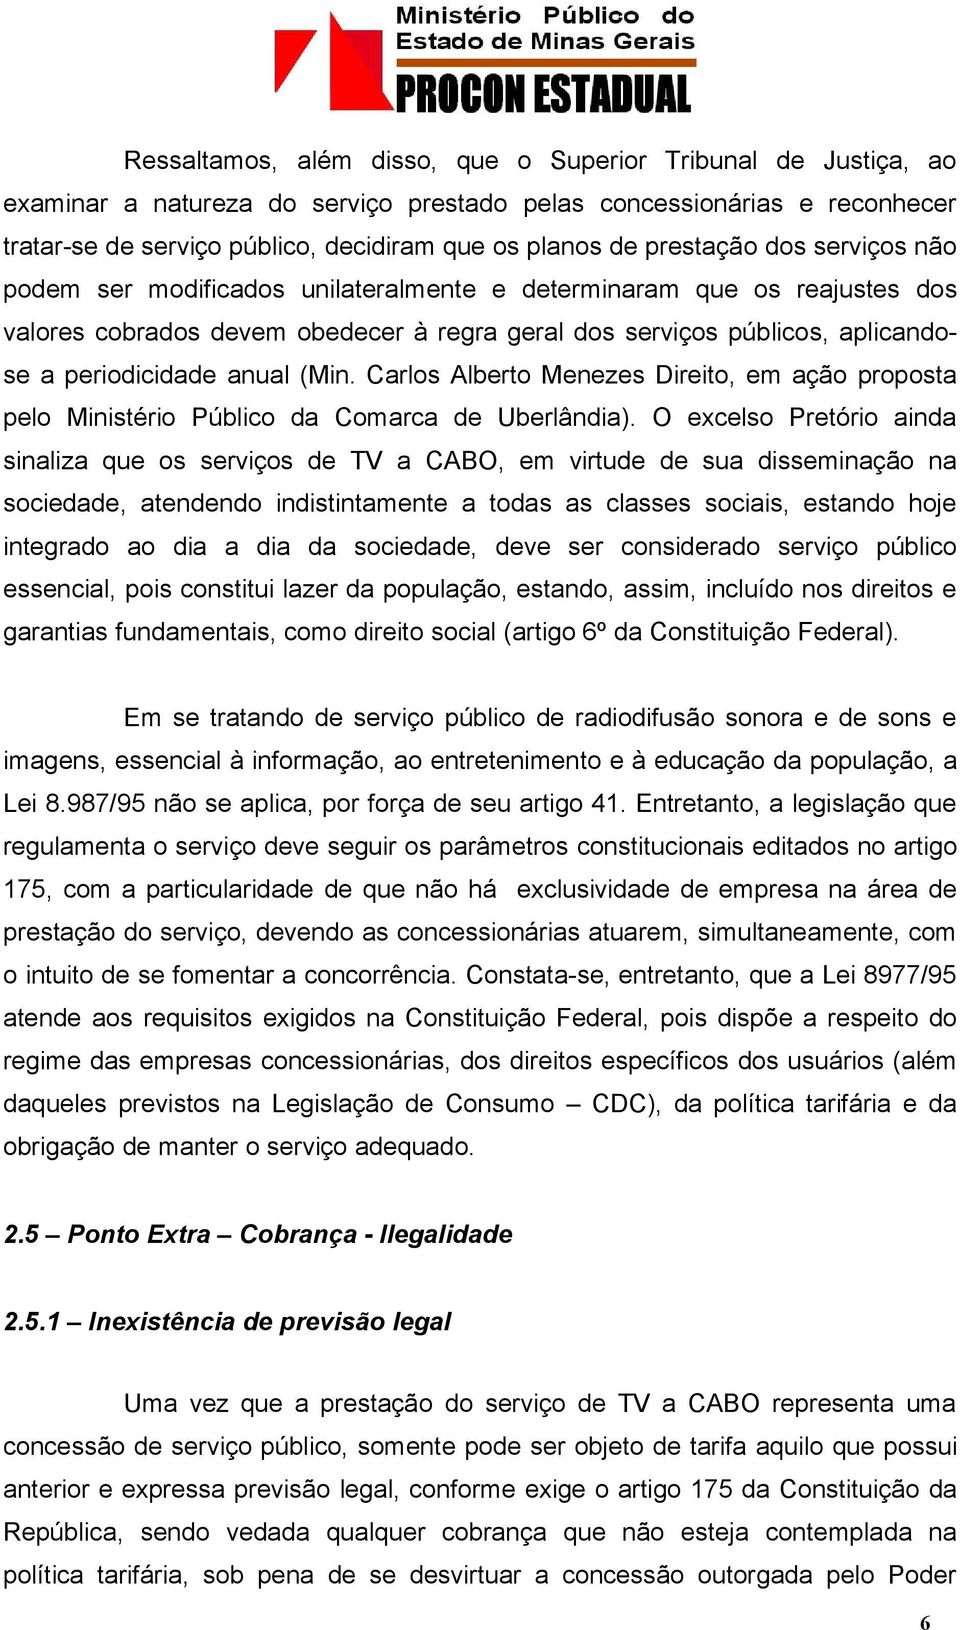 anual (Min. Carlos Alberto Menezes Direito, em ação proposta pelo Ministério Público da Comarca de Uberlândia).